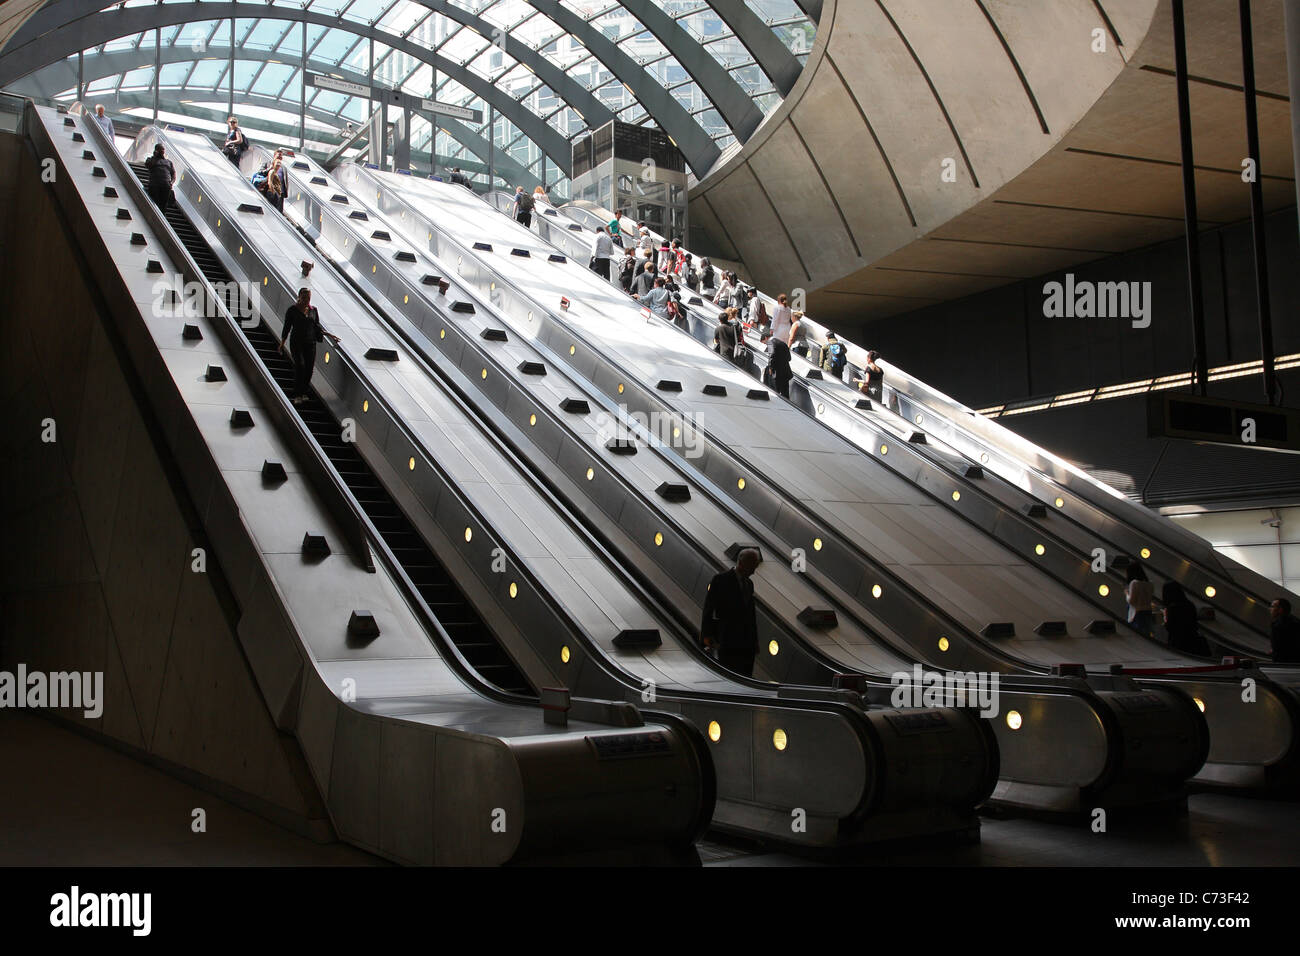 À l'escalier mécanique de la station de métro Canary Wharf. Banque D'Images